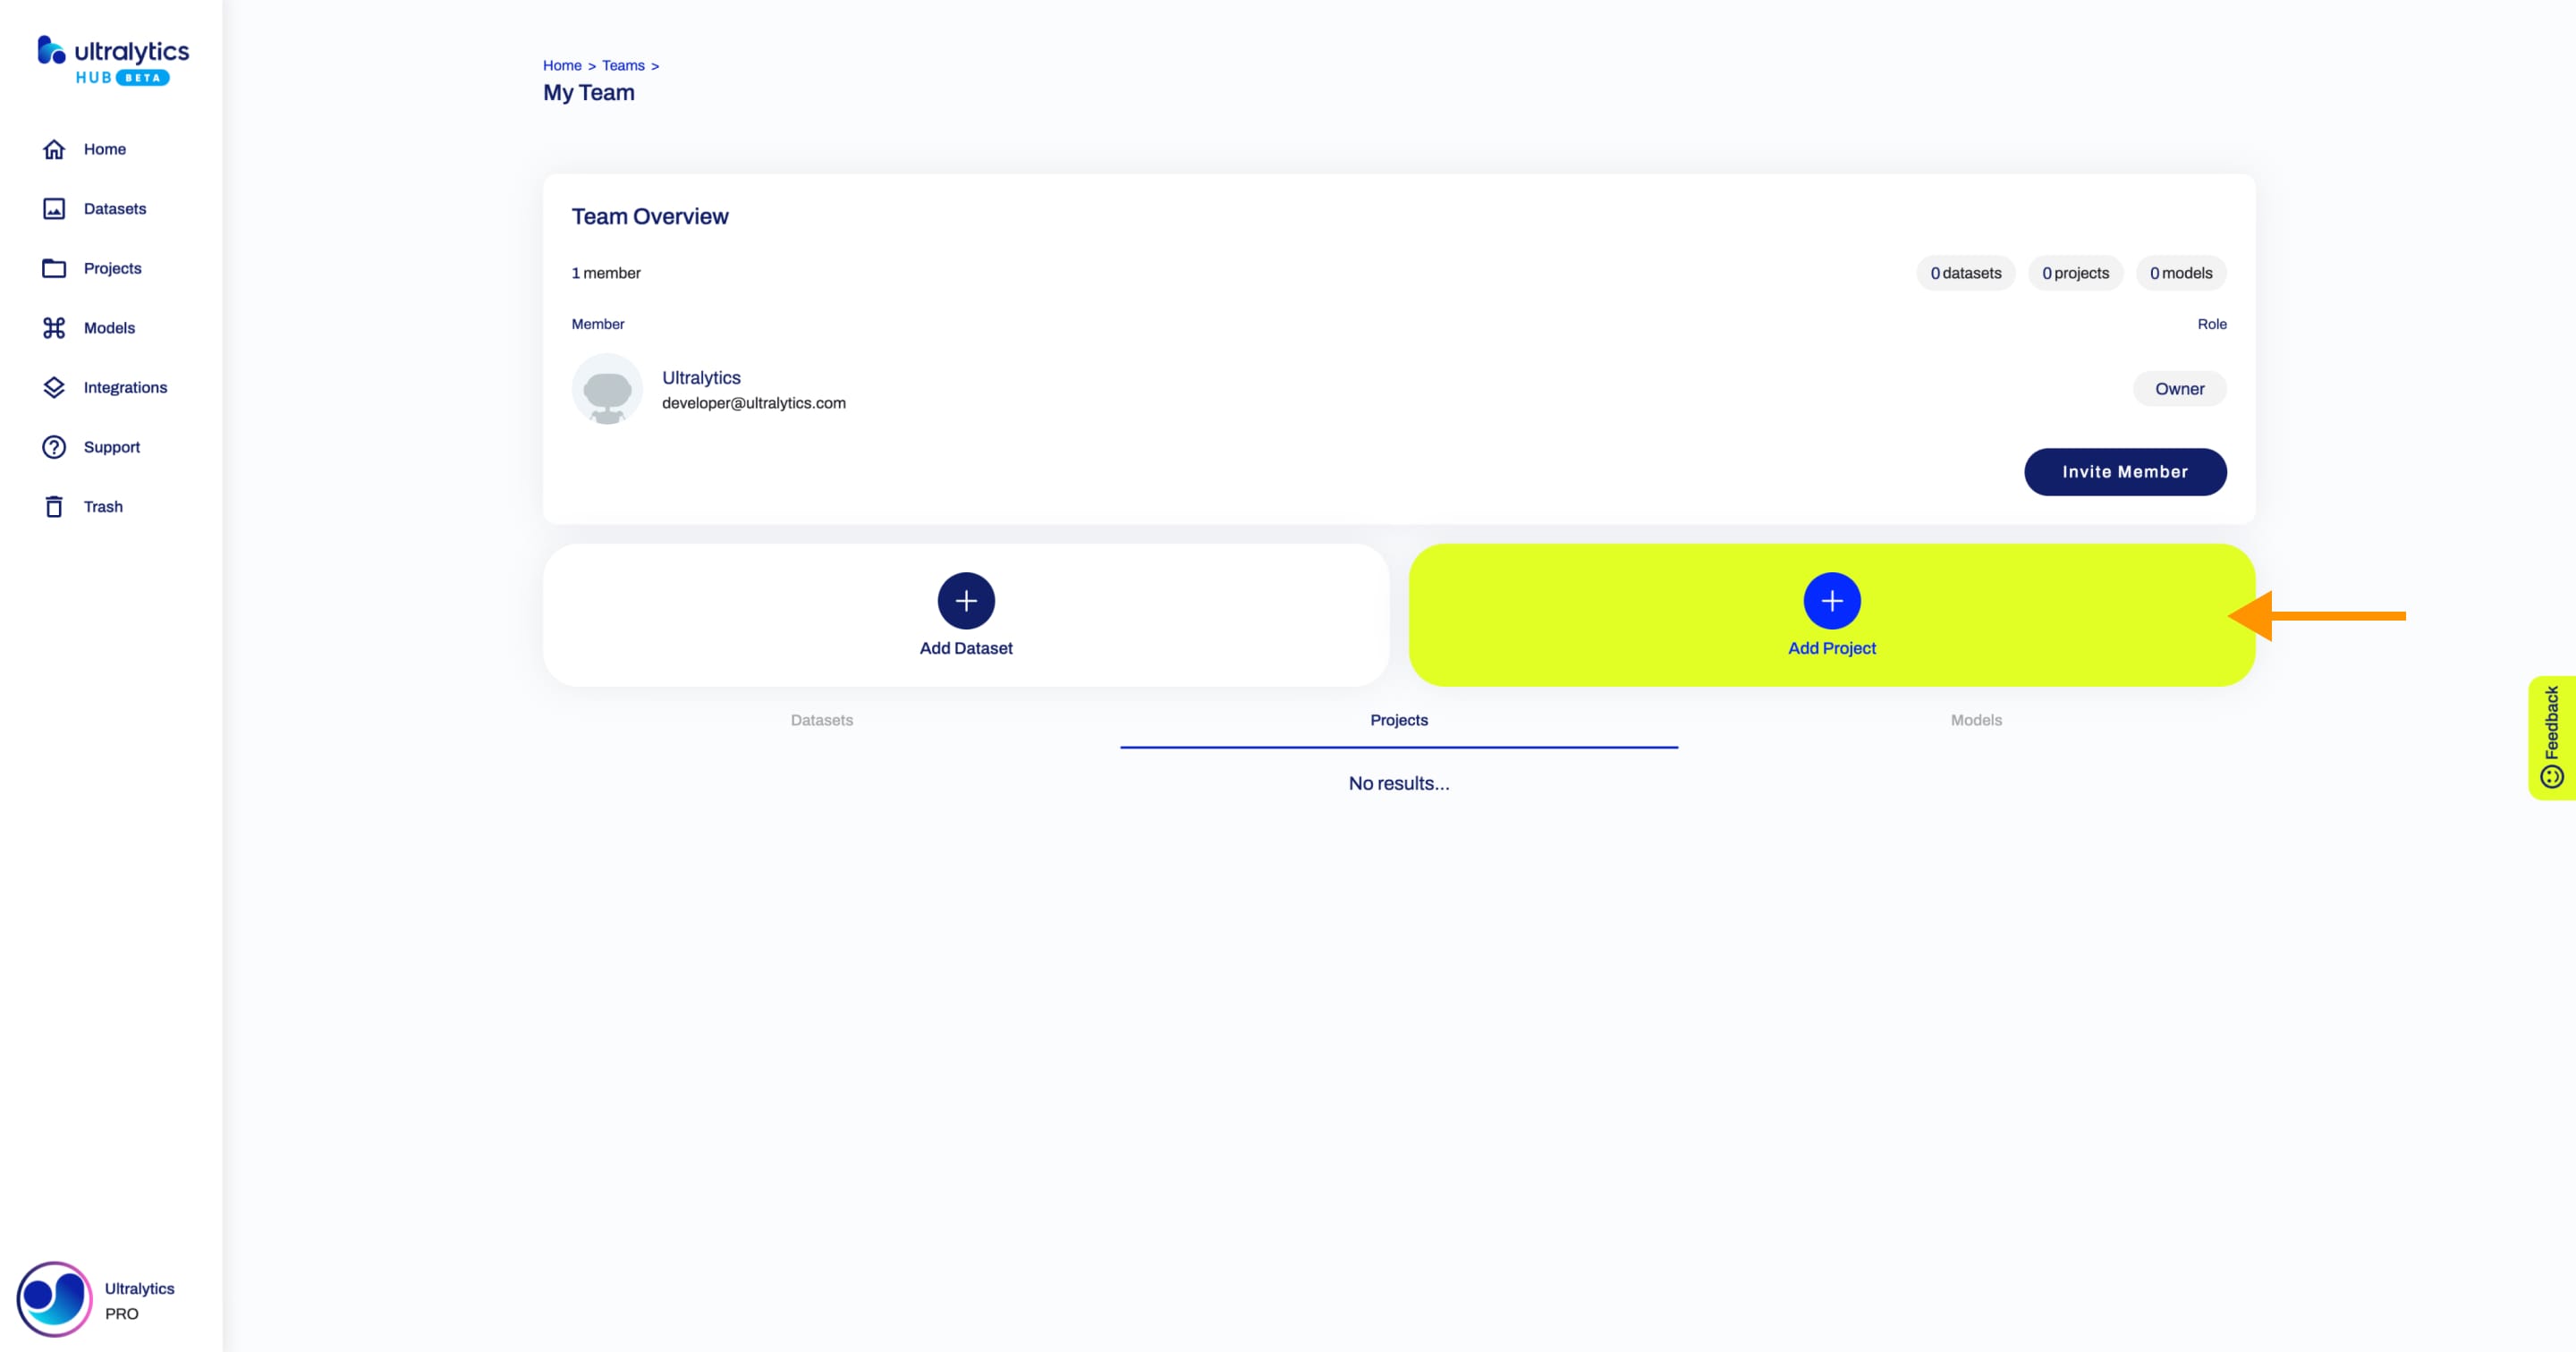 Ultralytics Скриншот страницы "Команда" в HUB со стрелкой, указывающей на кнопку "Добавить проект